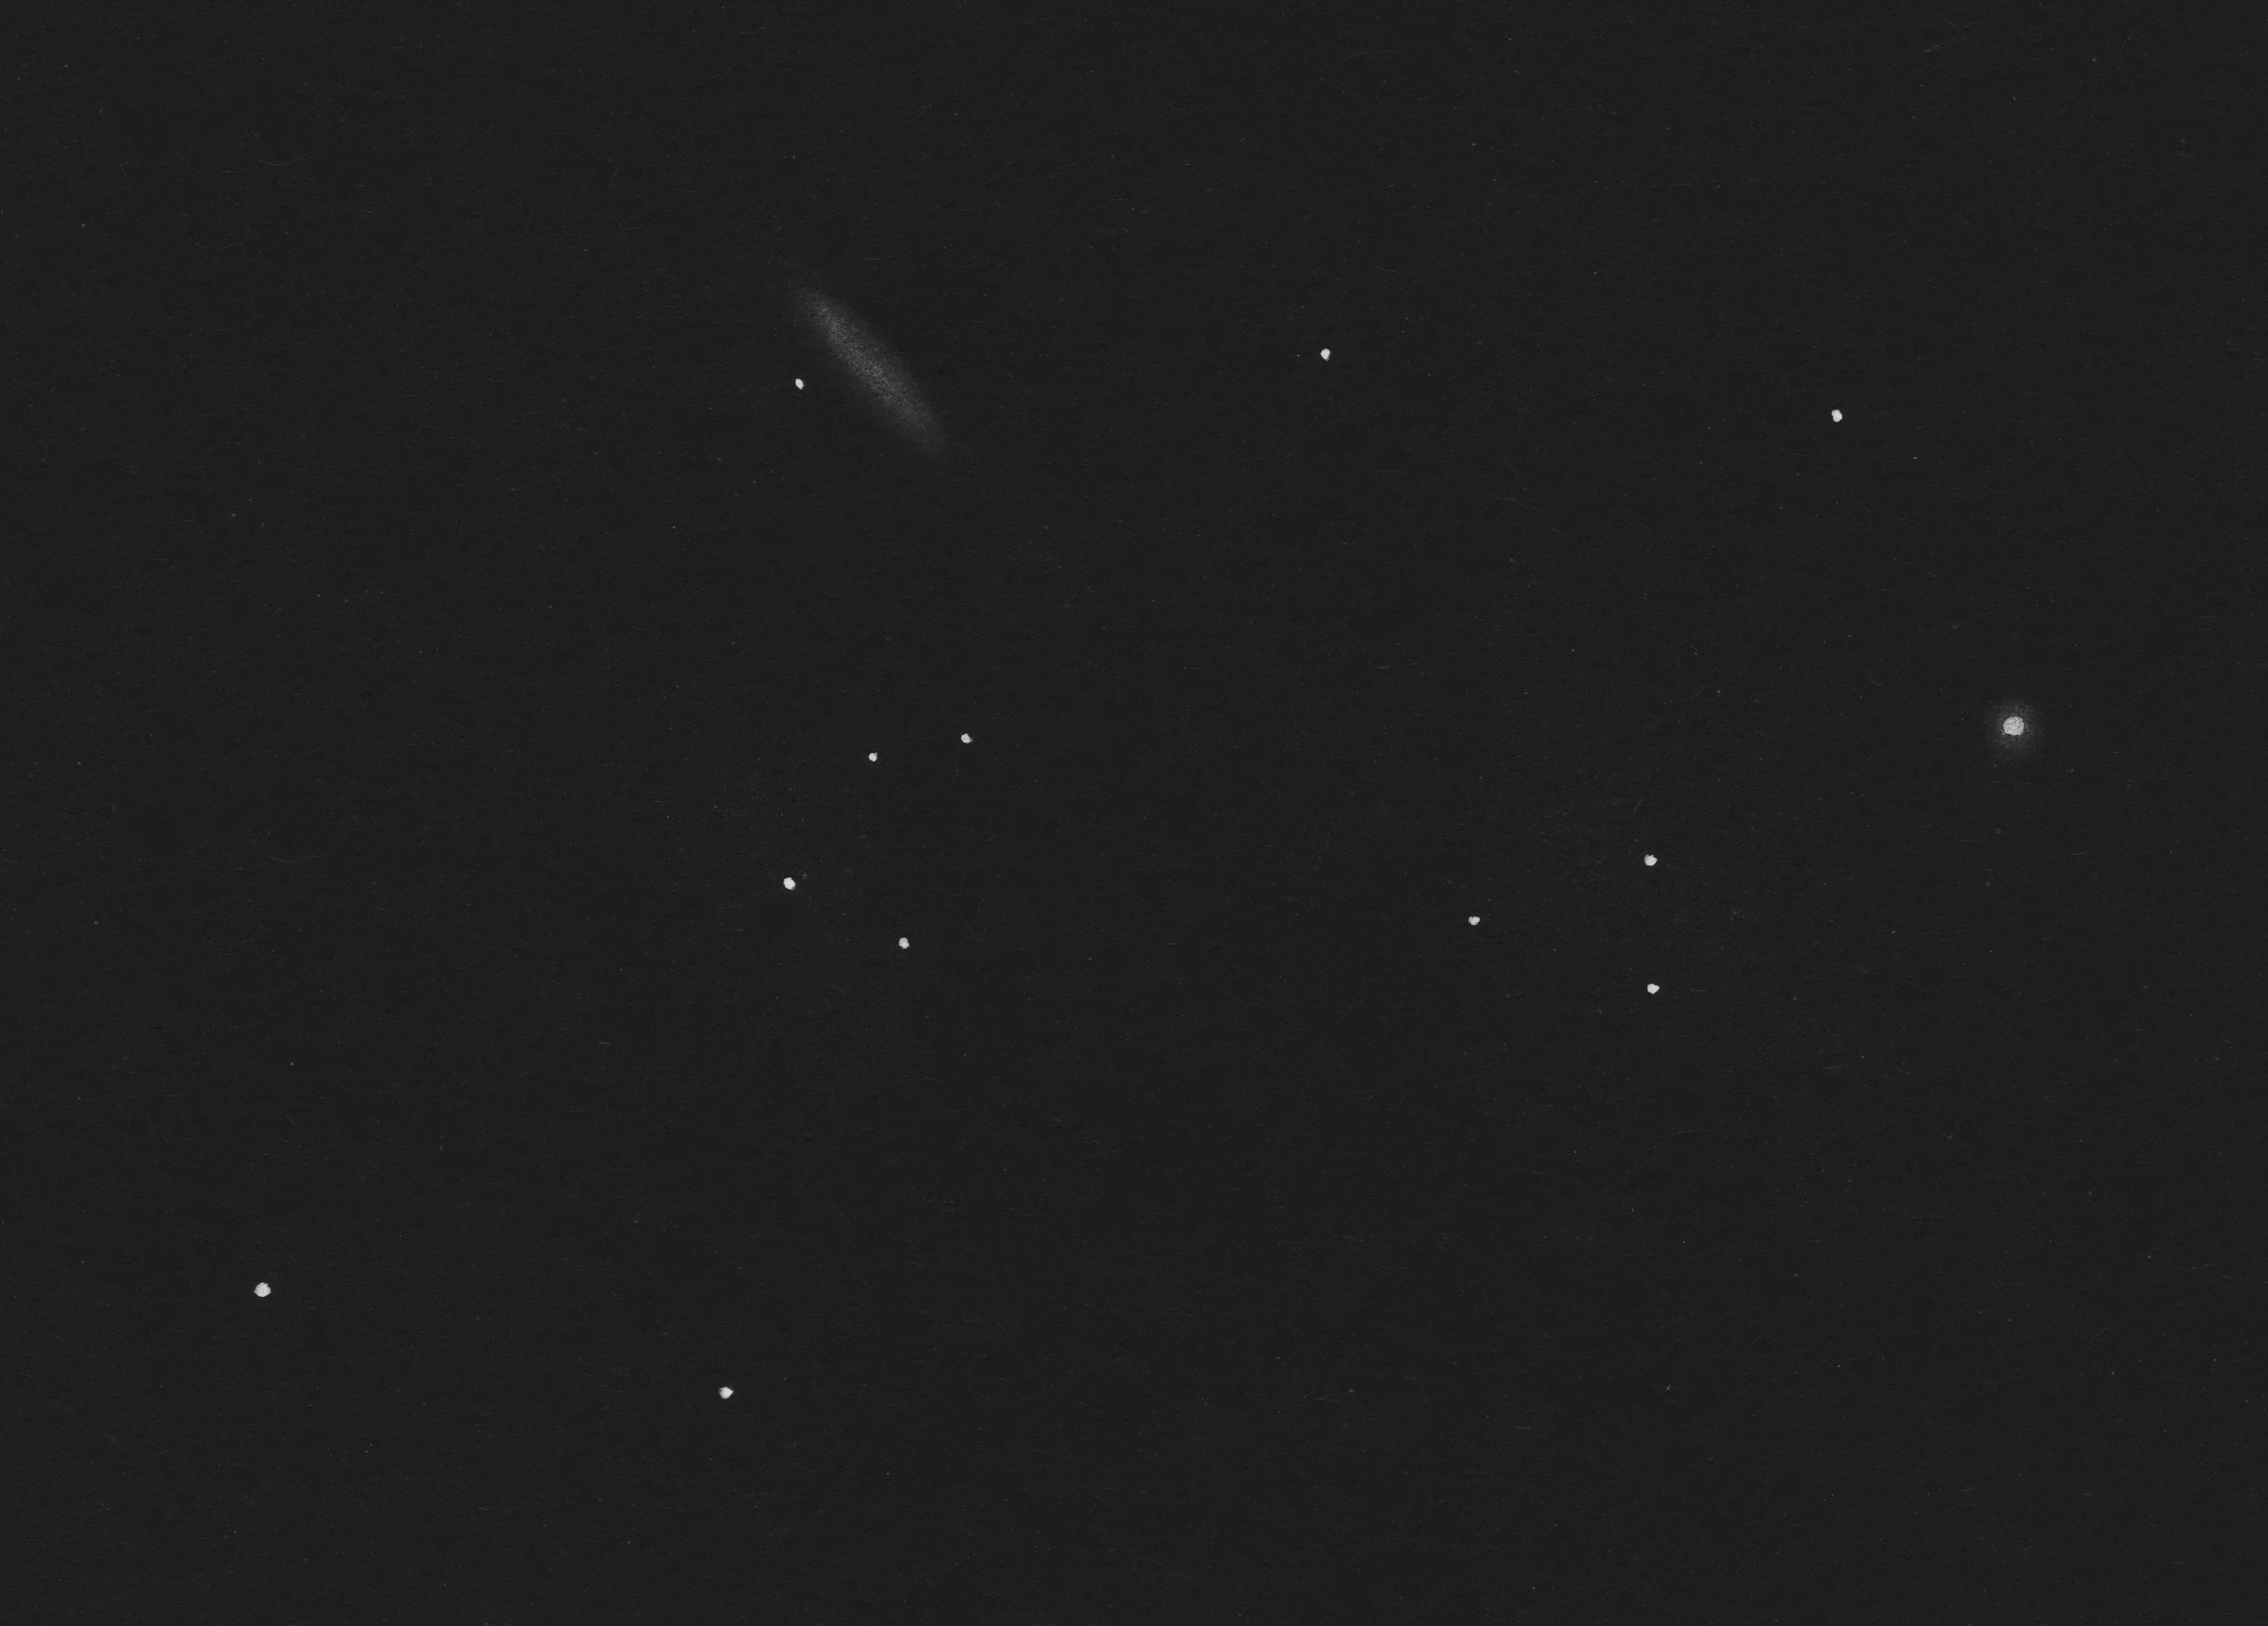 Skyguide 2021-1 - NGC 2683 (Sketch)